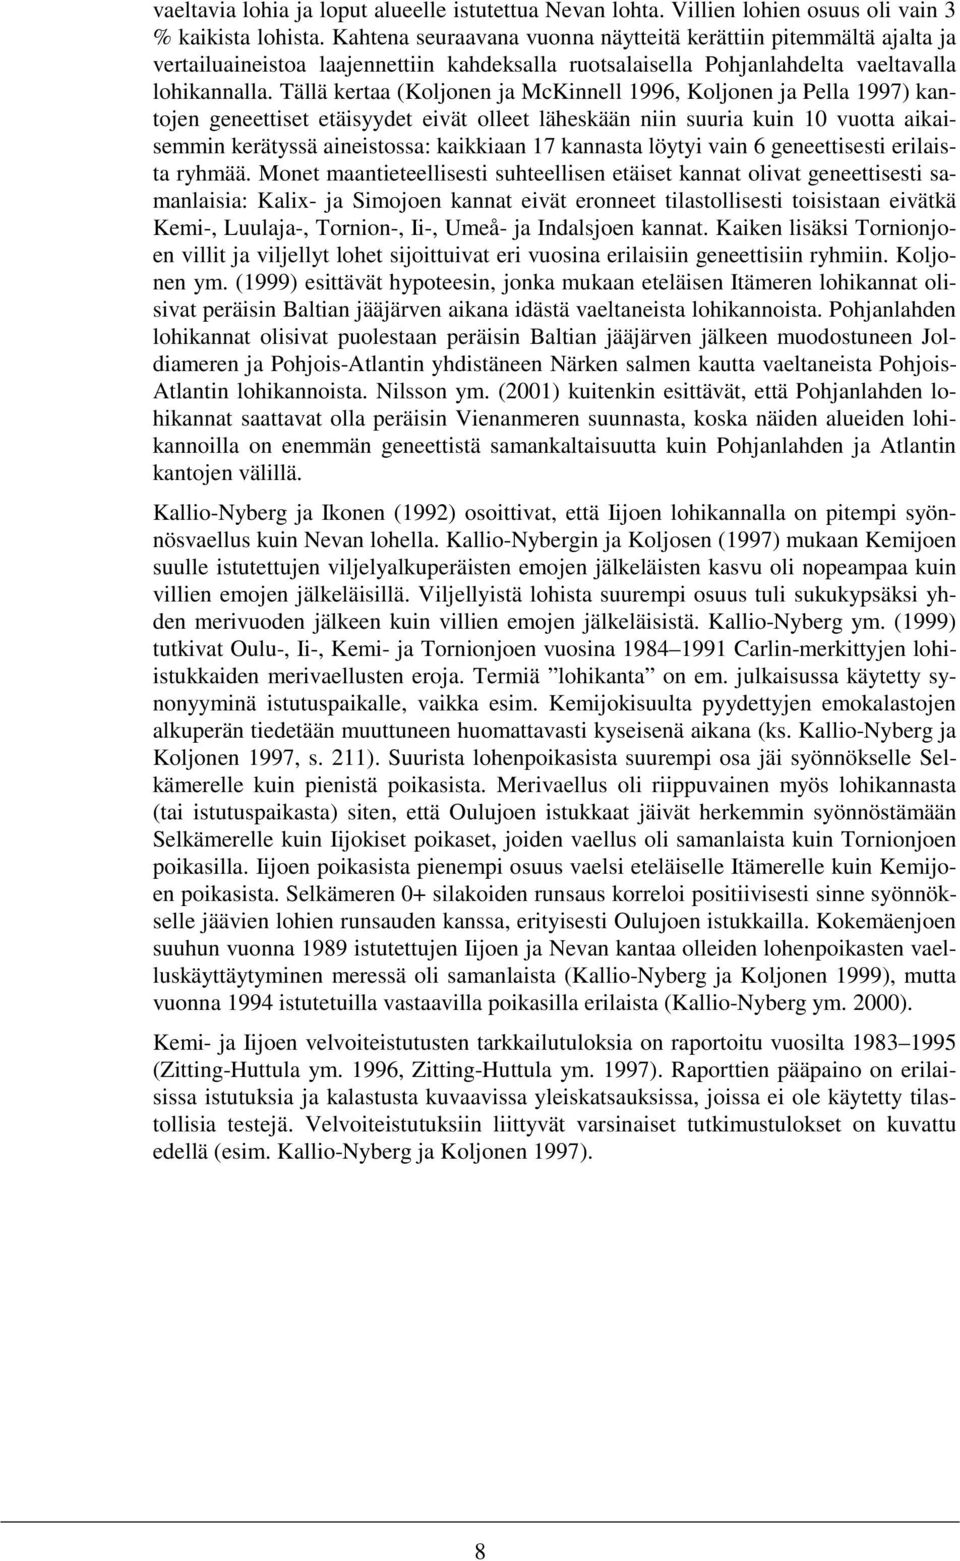 Tällä kertaa (Koljonen ja McKinnell 1996, Koljonen ja Pella 1997) kantojen geneettiset etäisyydet eivät olleet läheskään niin suuria kuin 10 vuotta aikaisemmin kerätyssä aineistossa: kaikkiaan 17